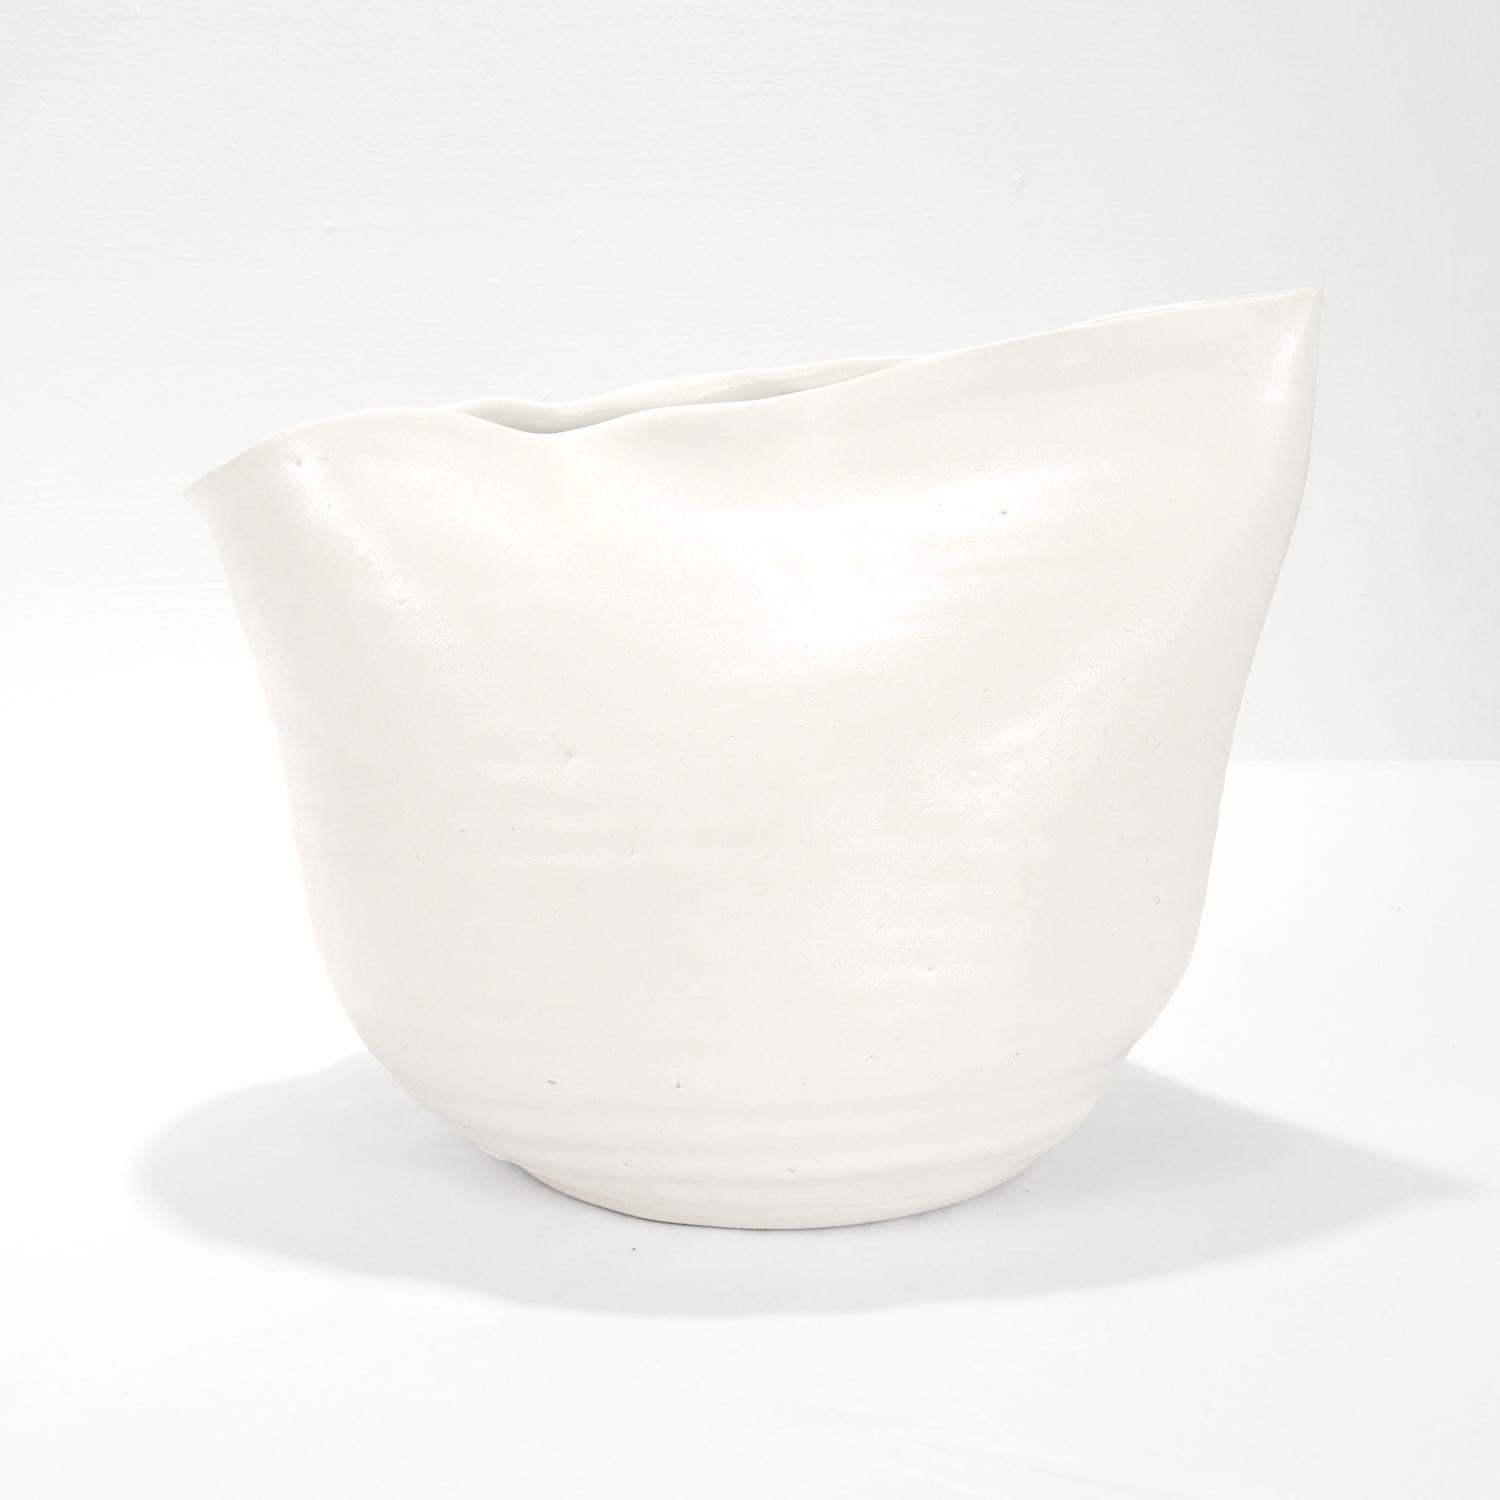 American Donna Karan Lenox Signed Limited Edition Embrace Porcelain Vase / Vessel For Sale